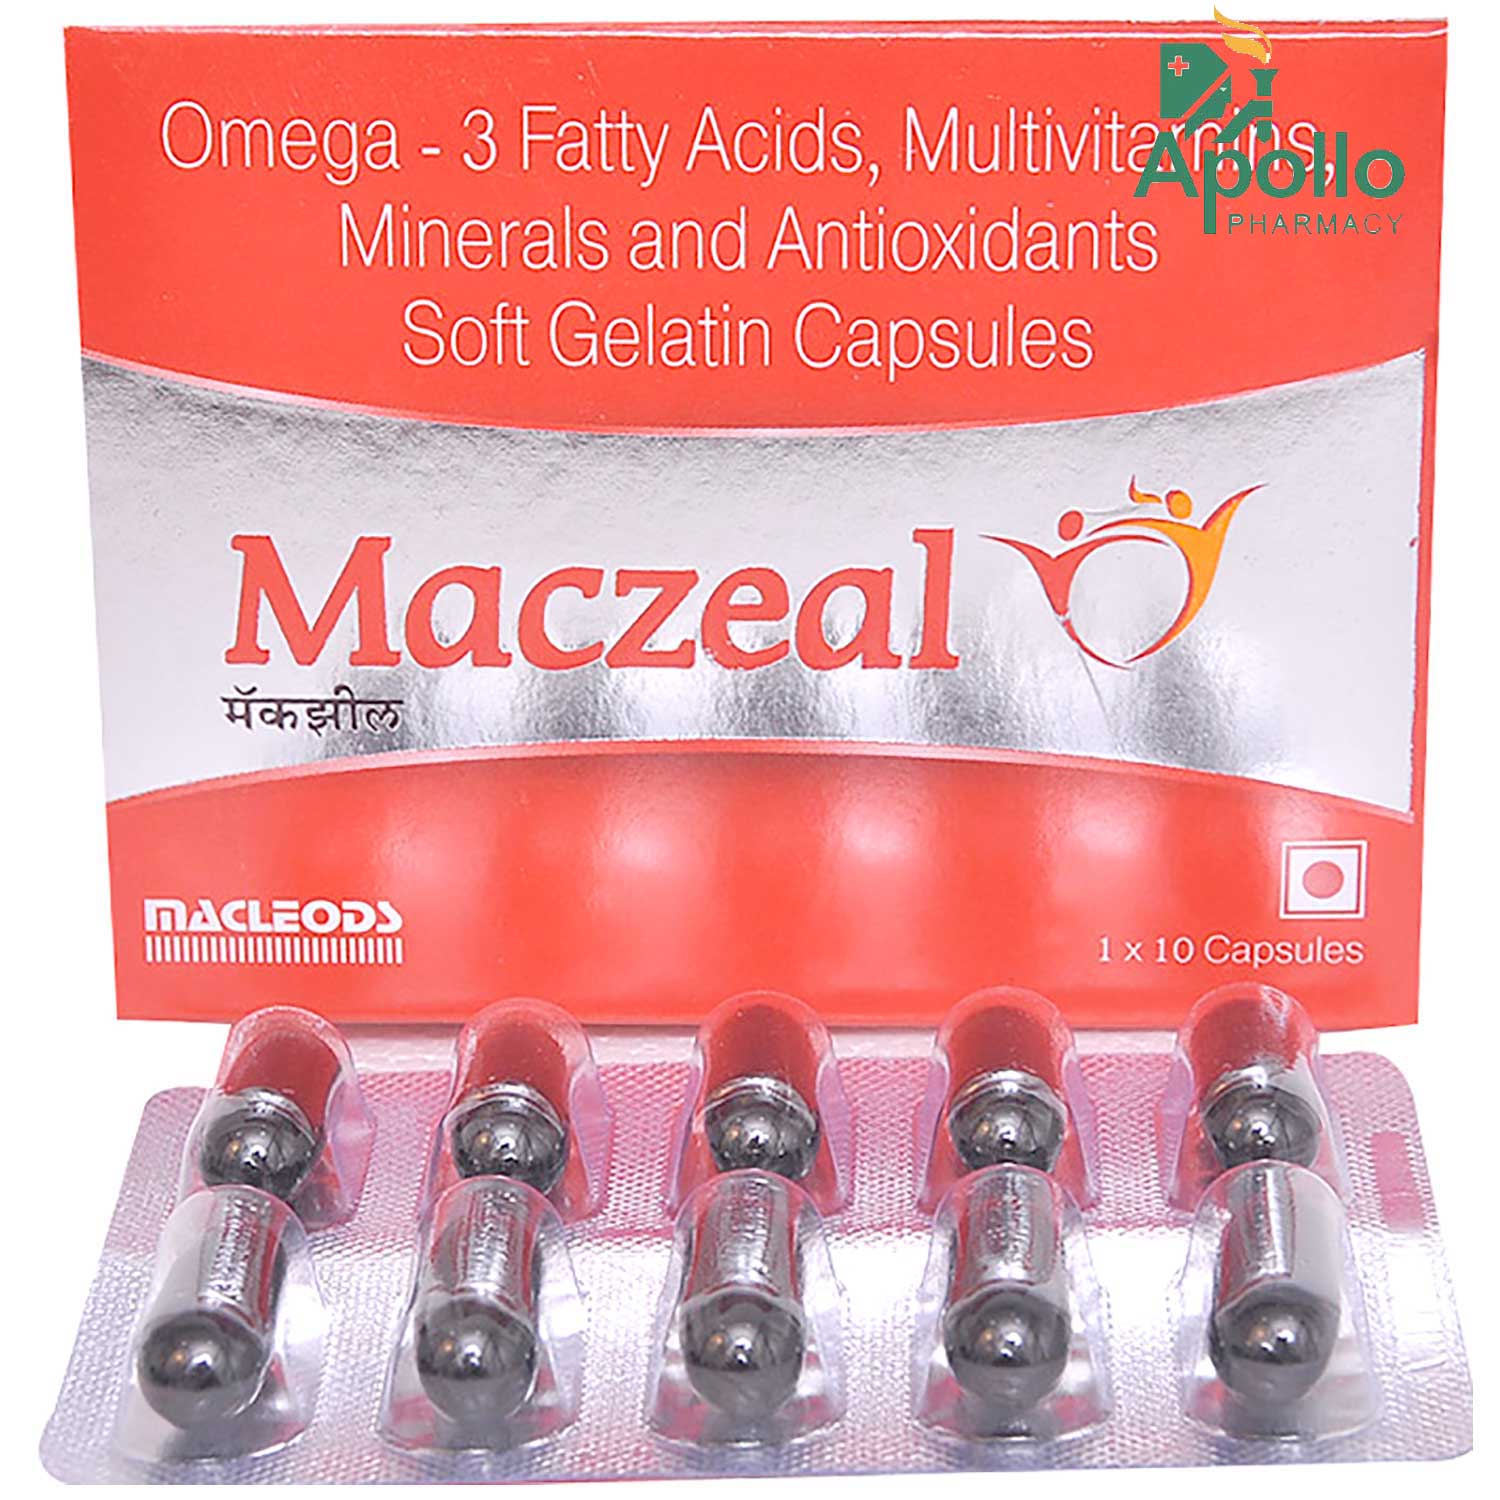 Maczeal Capsule 10's, Pack of 10 S